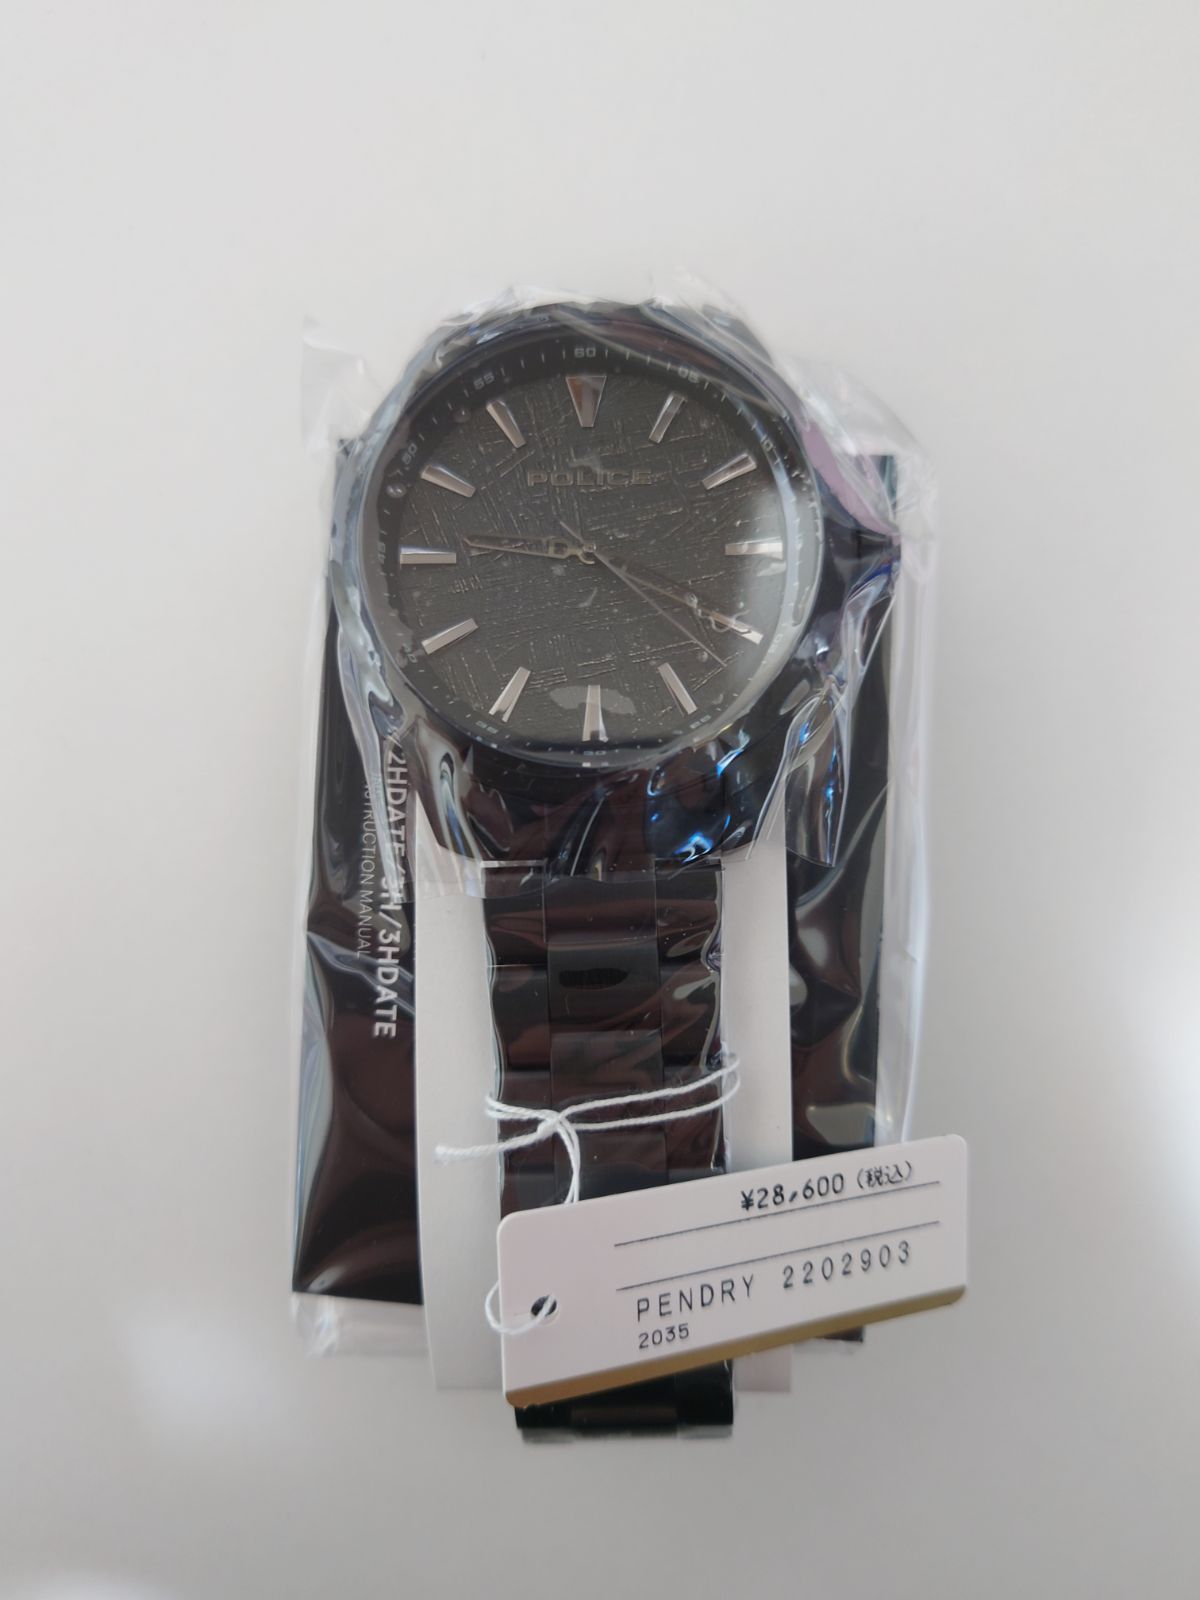 新品[Police] 腕時計 PENDRY PEWJG2202903 メンズ メルカリShops